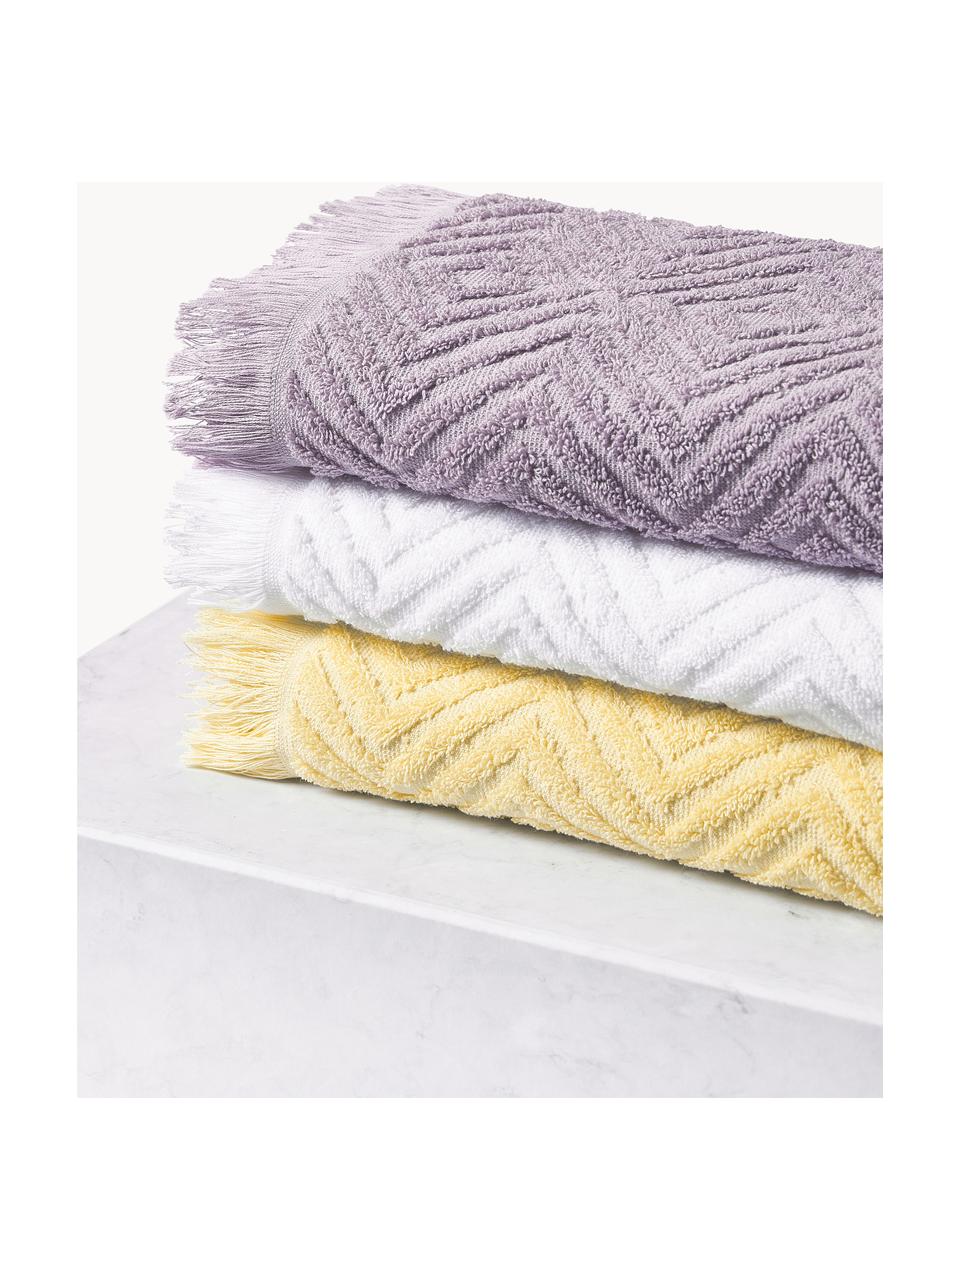 Set di asciugamani con motivo in rilievo Jacqui, varie misure, Lavanda, Set da 3 (asciugamano ospite, asciugamano e telo bagno)